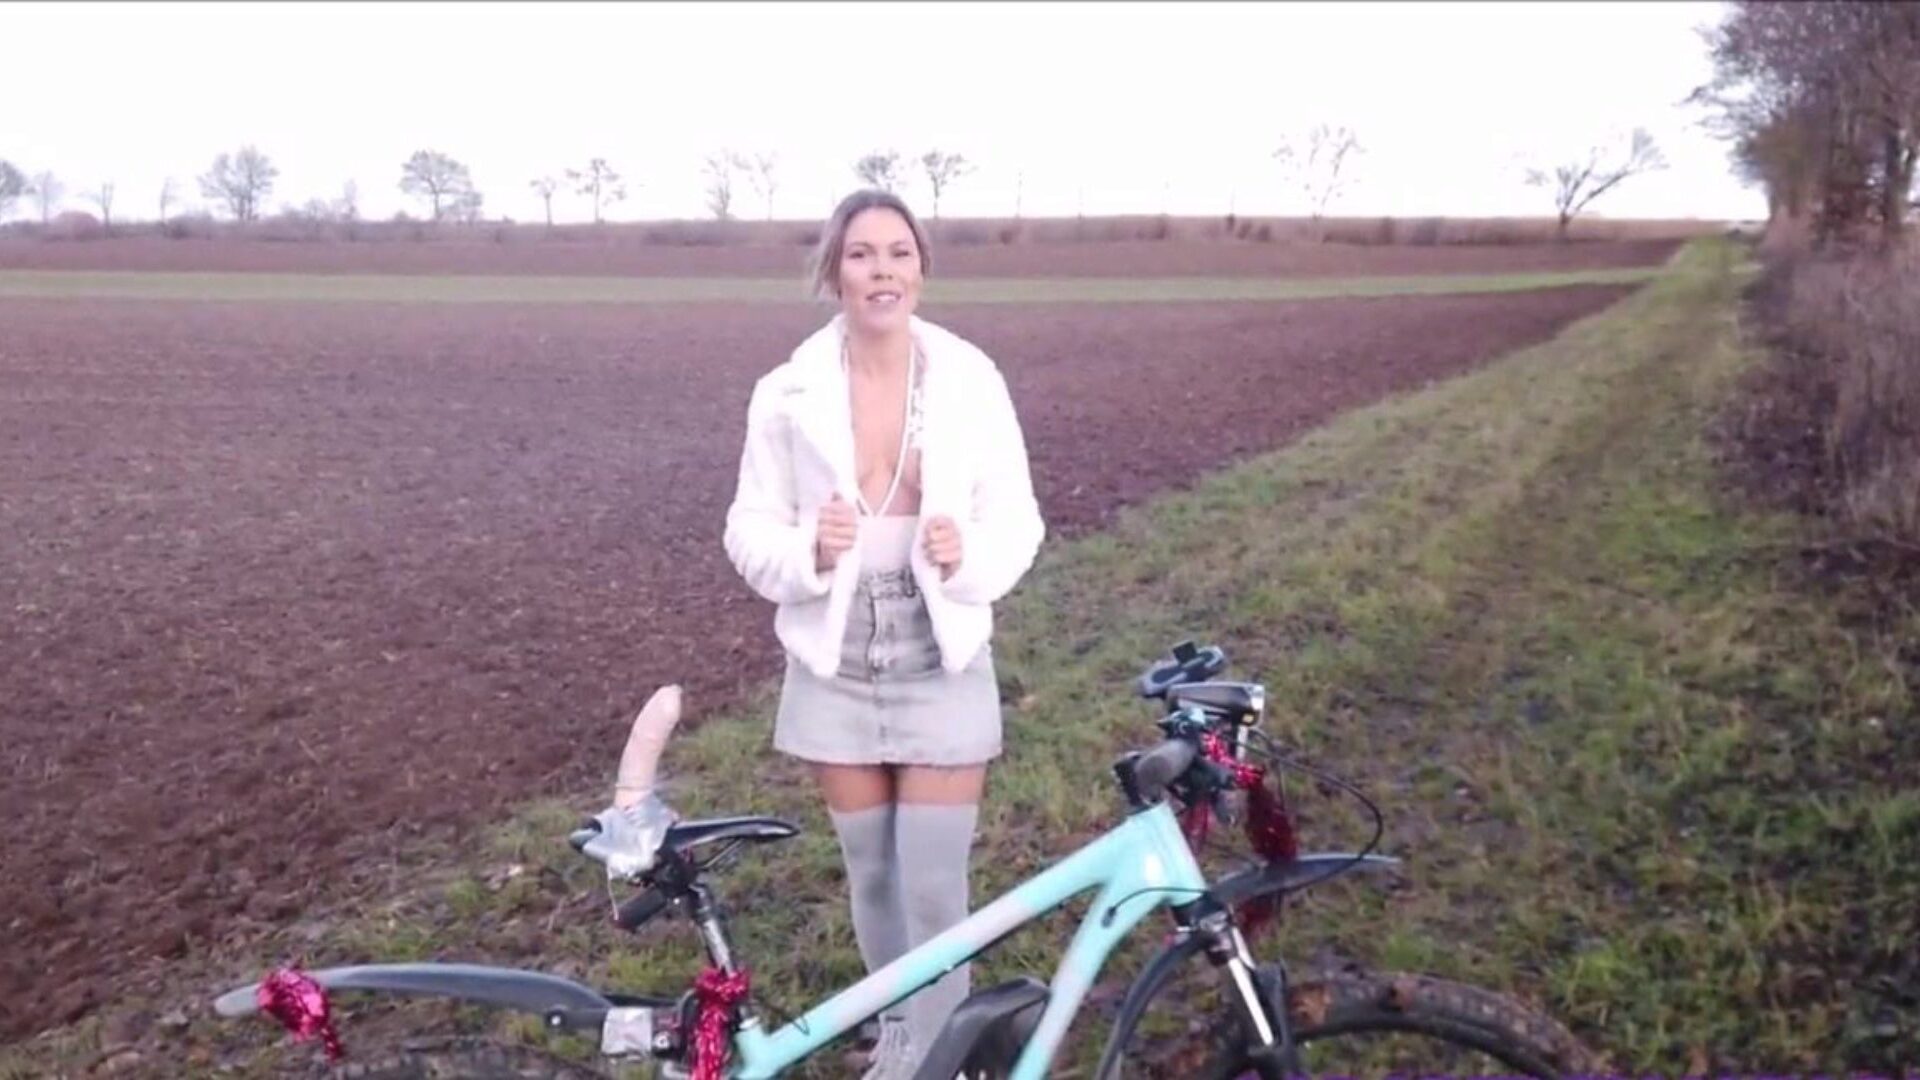 το πρωτότυπο μέρος 2 η Λάρα Μπέργκμαν κάνει κακή χρήση του ποδηλάτου της: πορνό 2b παρακολουθήστε το αρχικό μέρος 2 η Λάρα Μπέργκμαν κακοποιεί το ποδήλατο βίντεο στο xhamster - η απόλυτη συλλογή δωρεάν γερμανικών δύο σωλήνων hd gonzo πορνογραφικού βίντεο